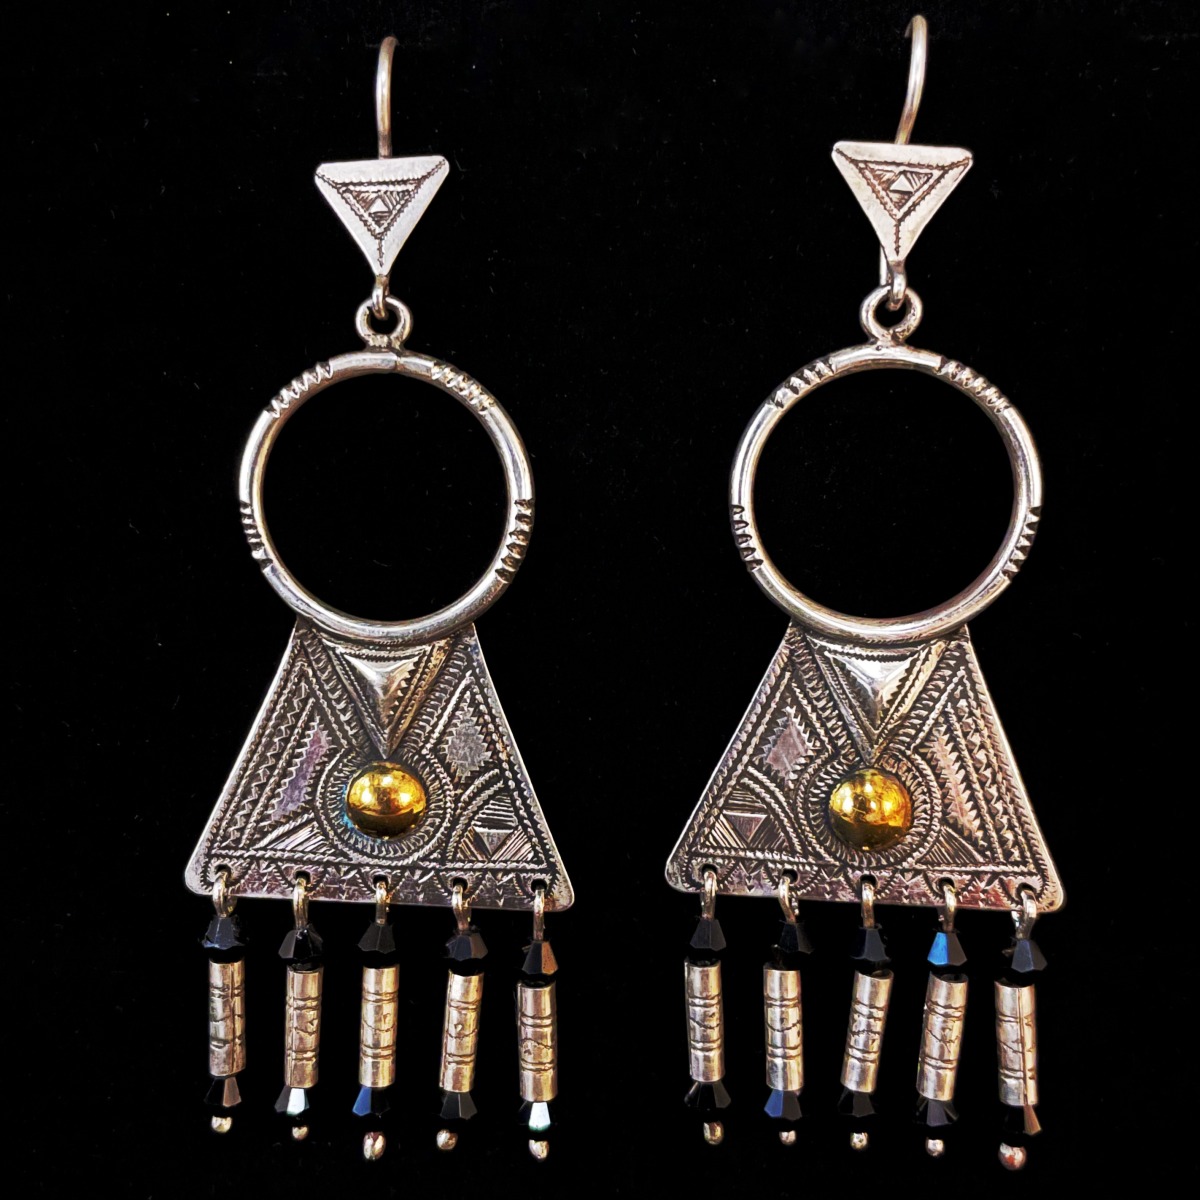 Tuareg Earrings - 2 Metals